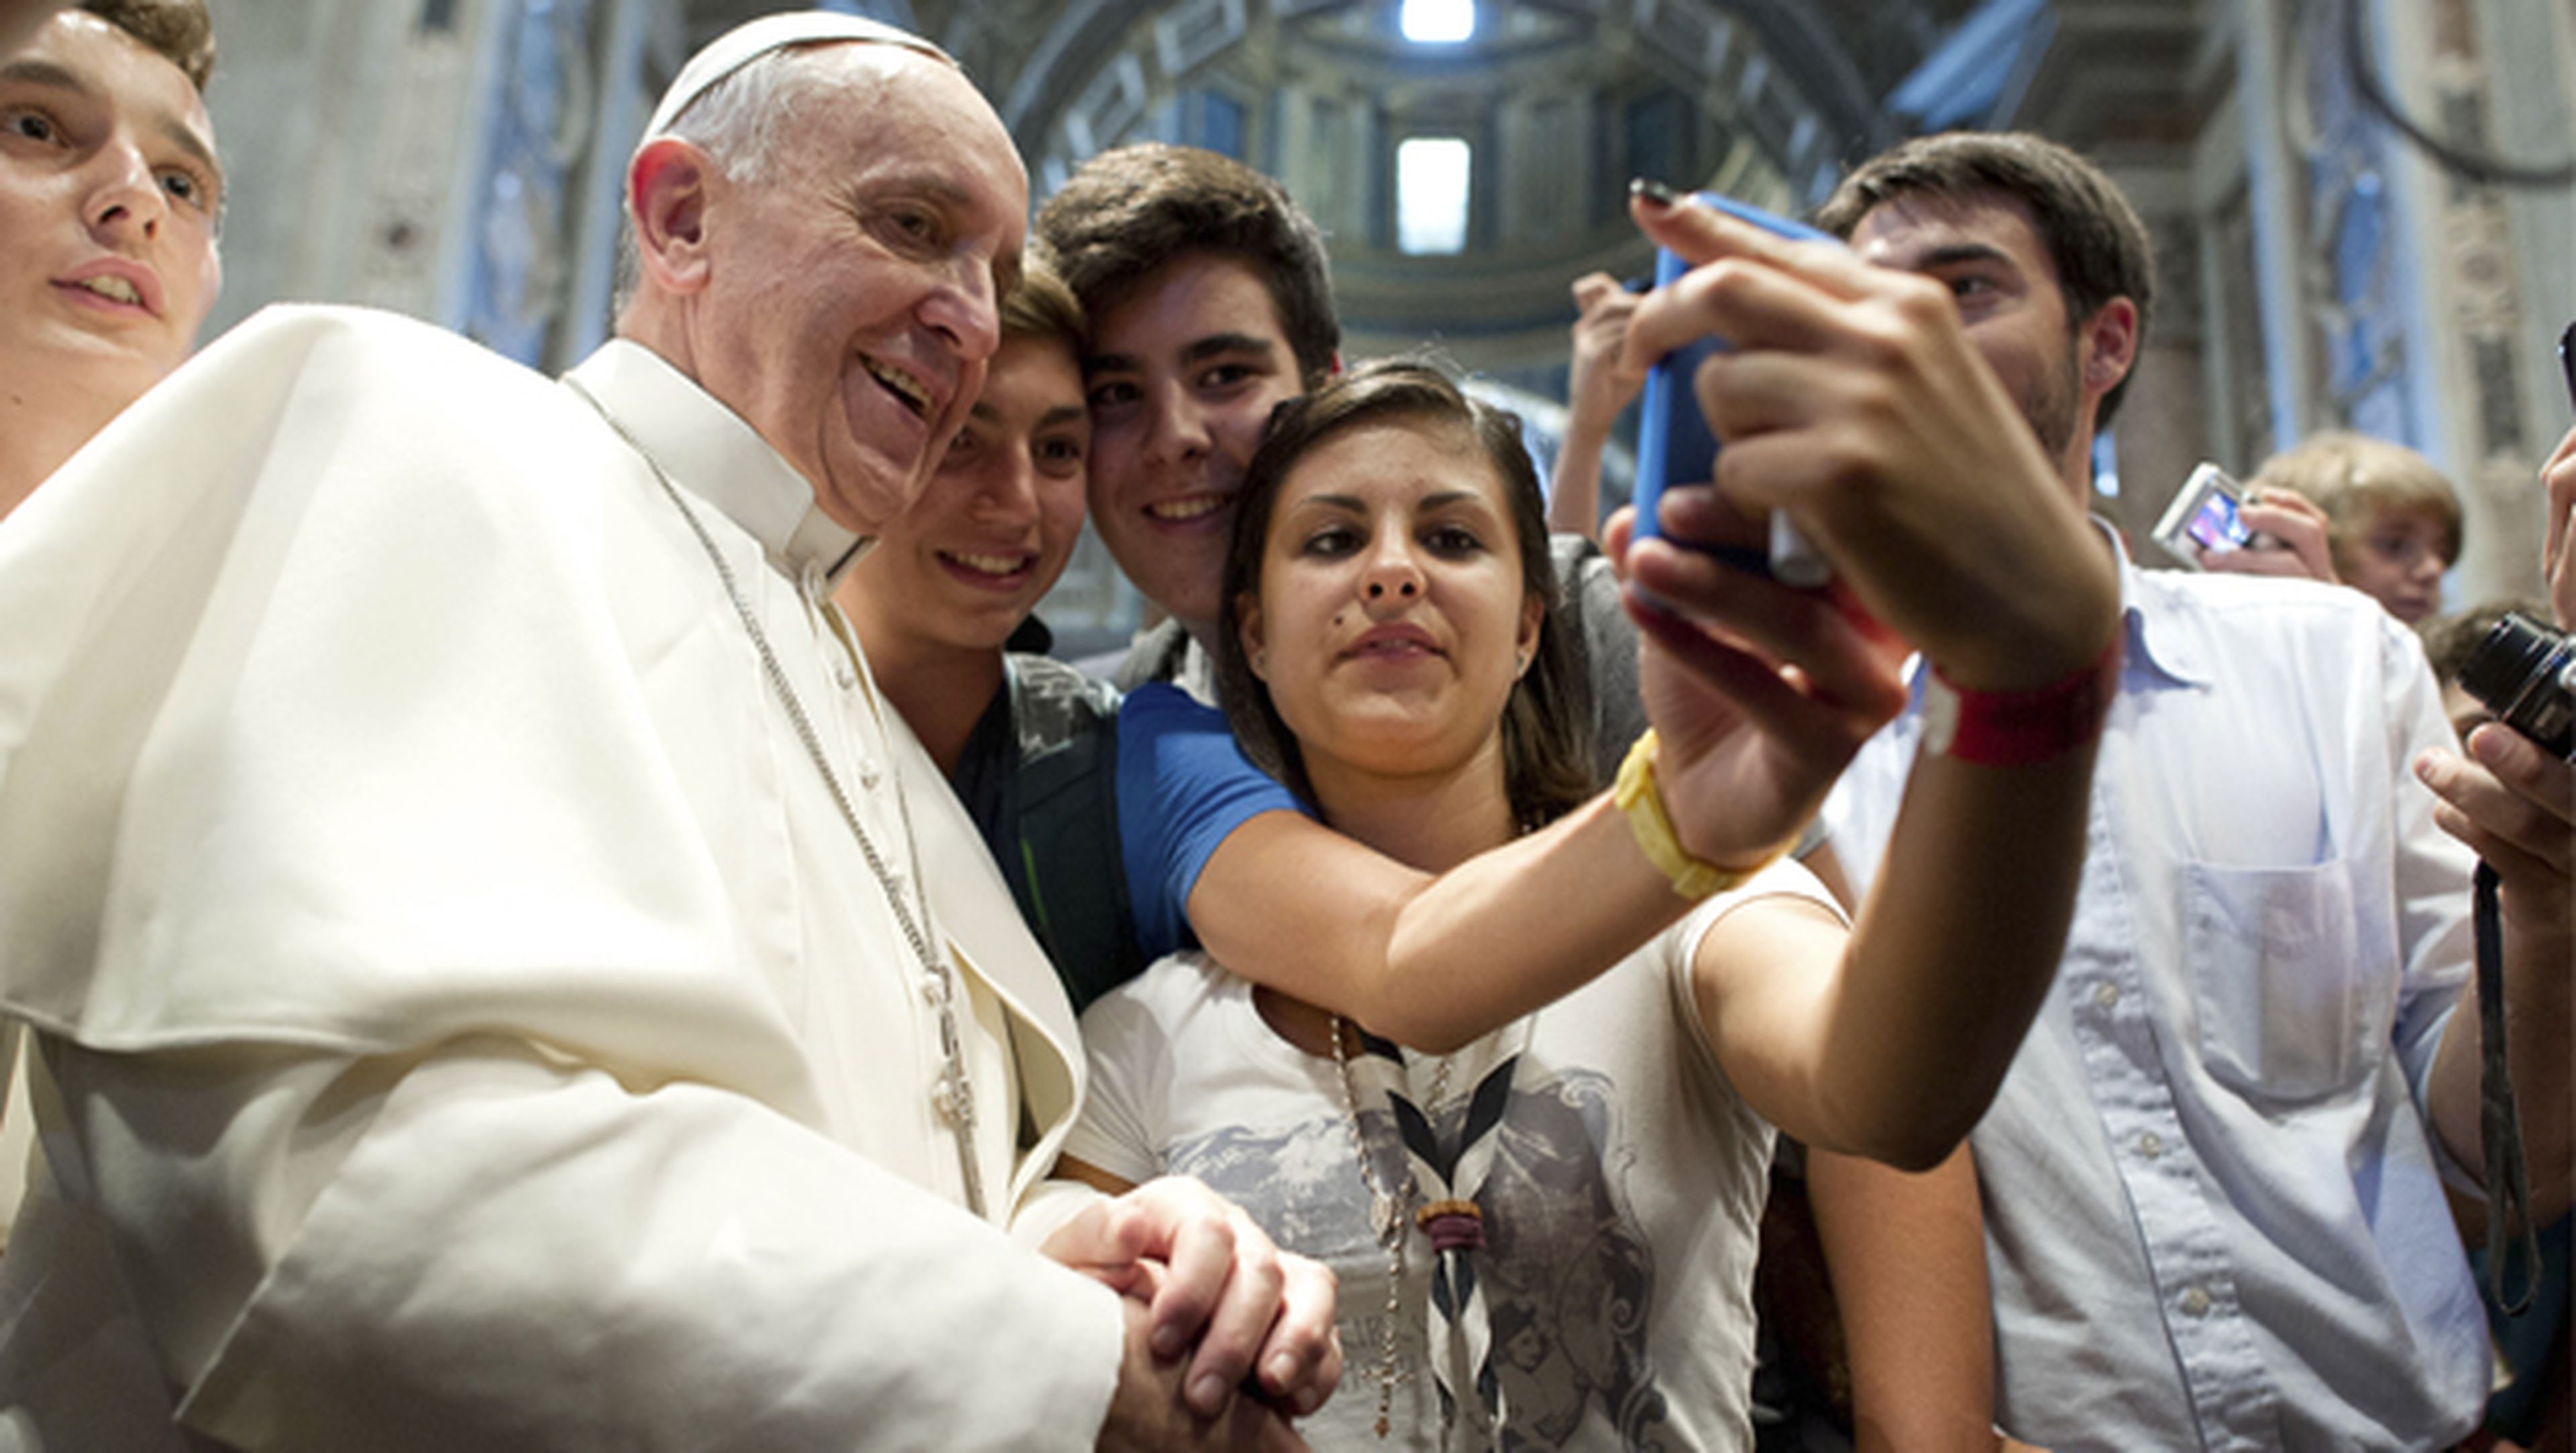 El Papa Francisco tendrá cuenta de Instagram